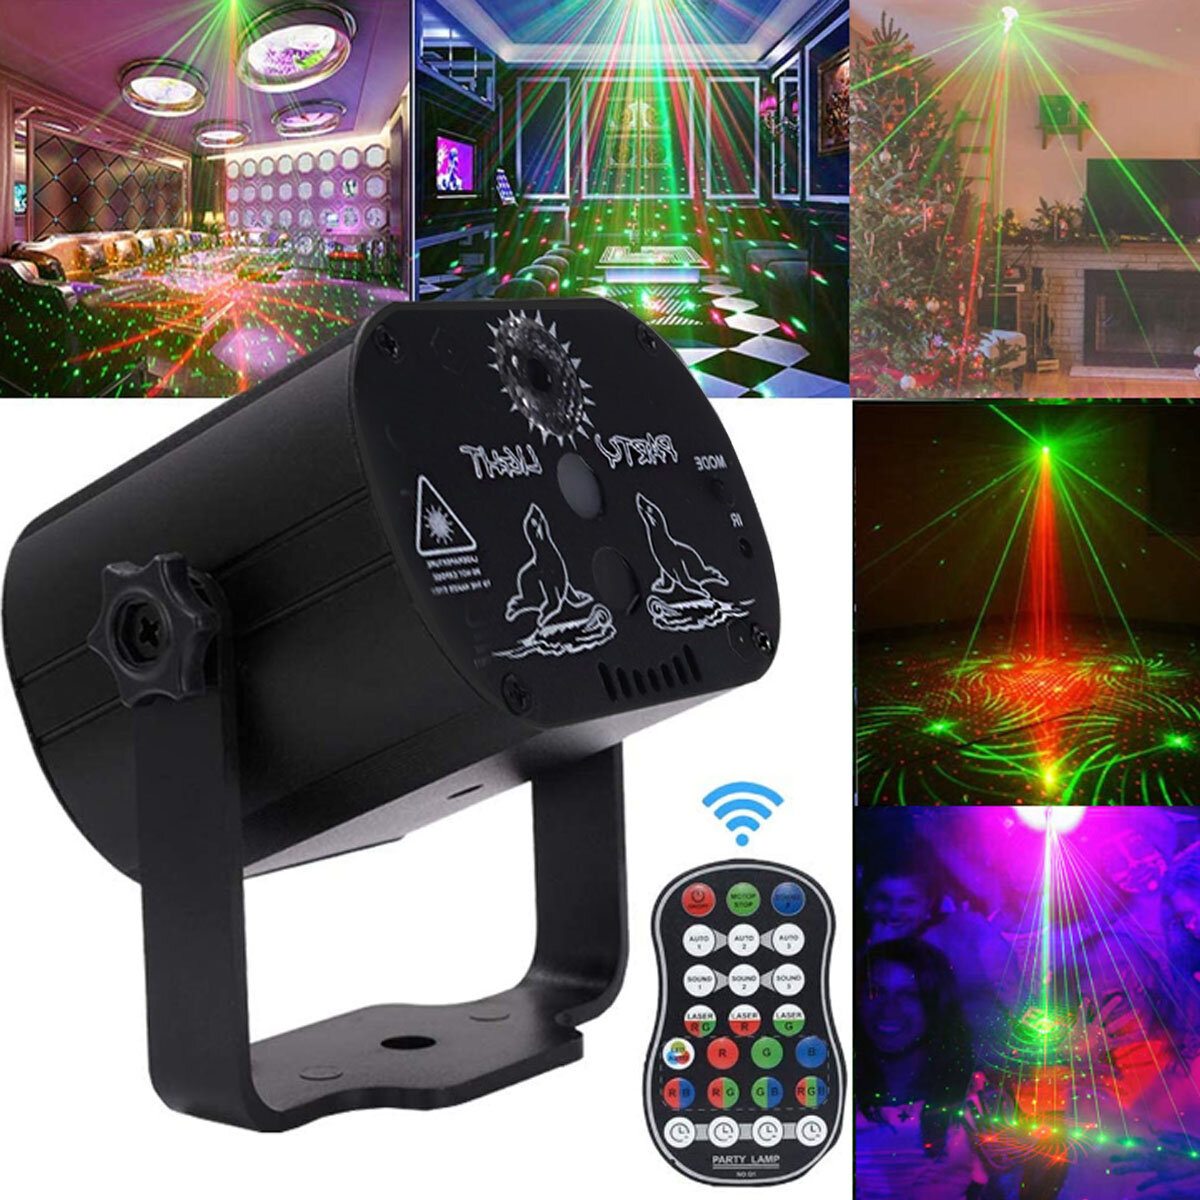 

AC100V-240V 90 Patterns Projector LED RGB Laser Stage Light DJ Disco KTV Home Party Lighting